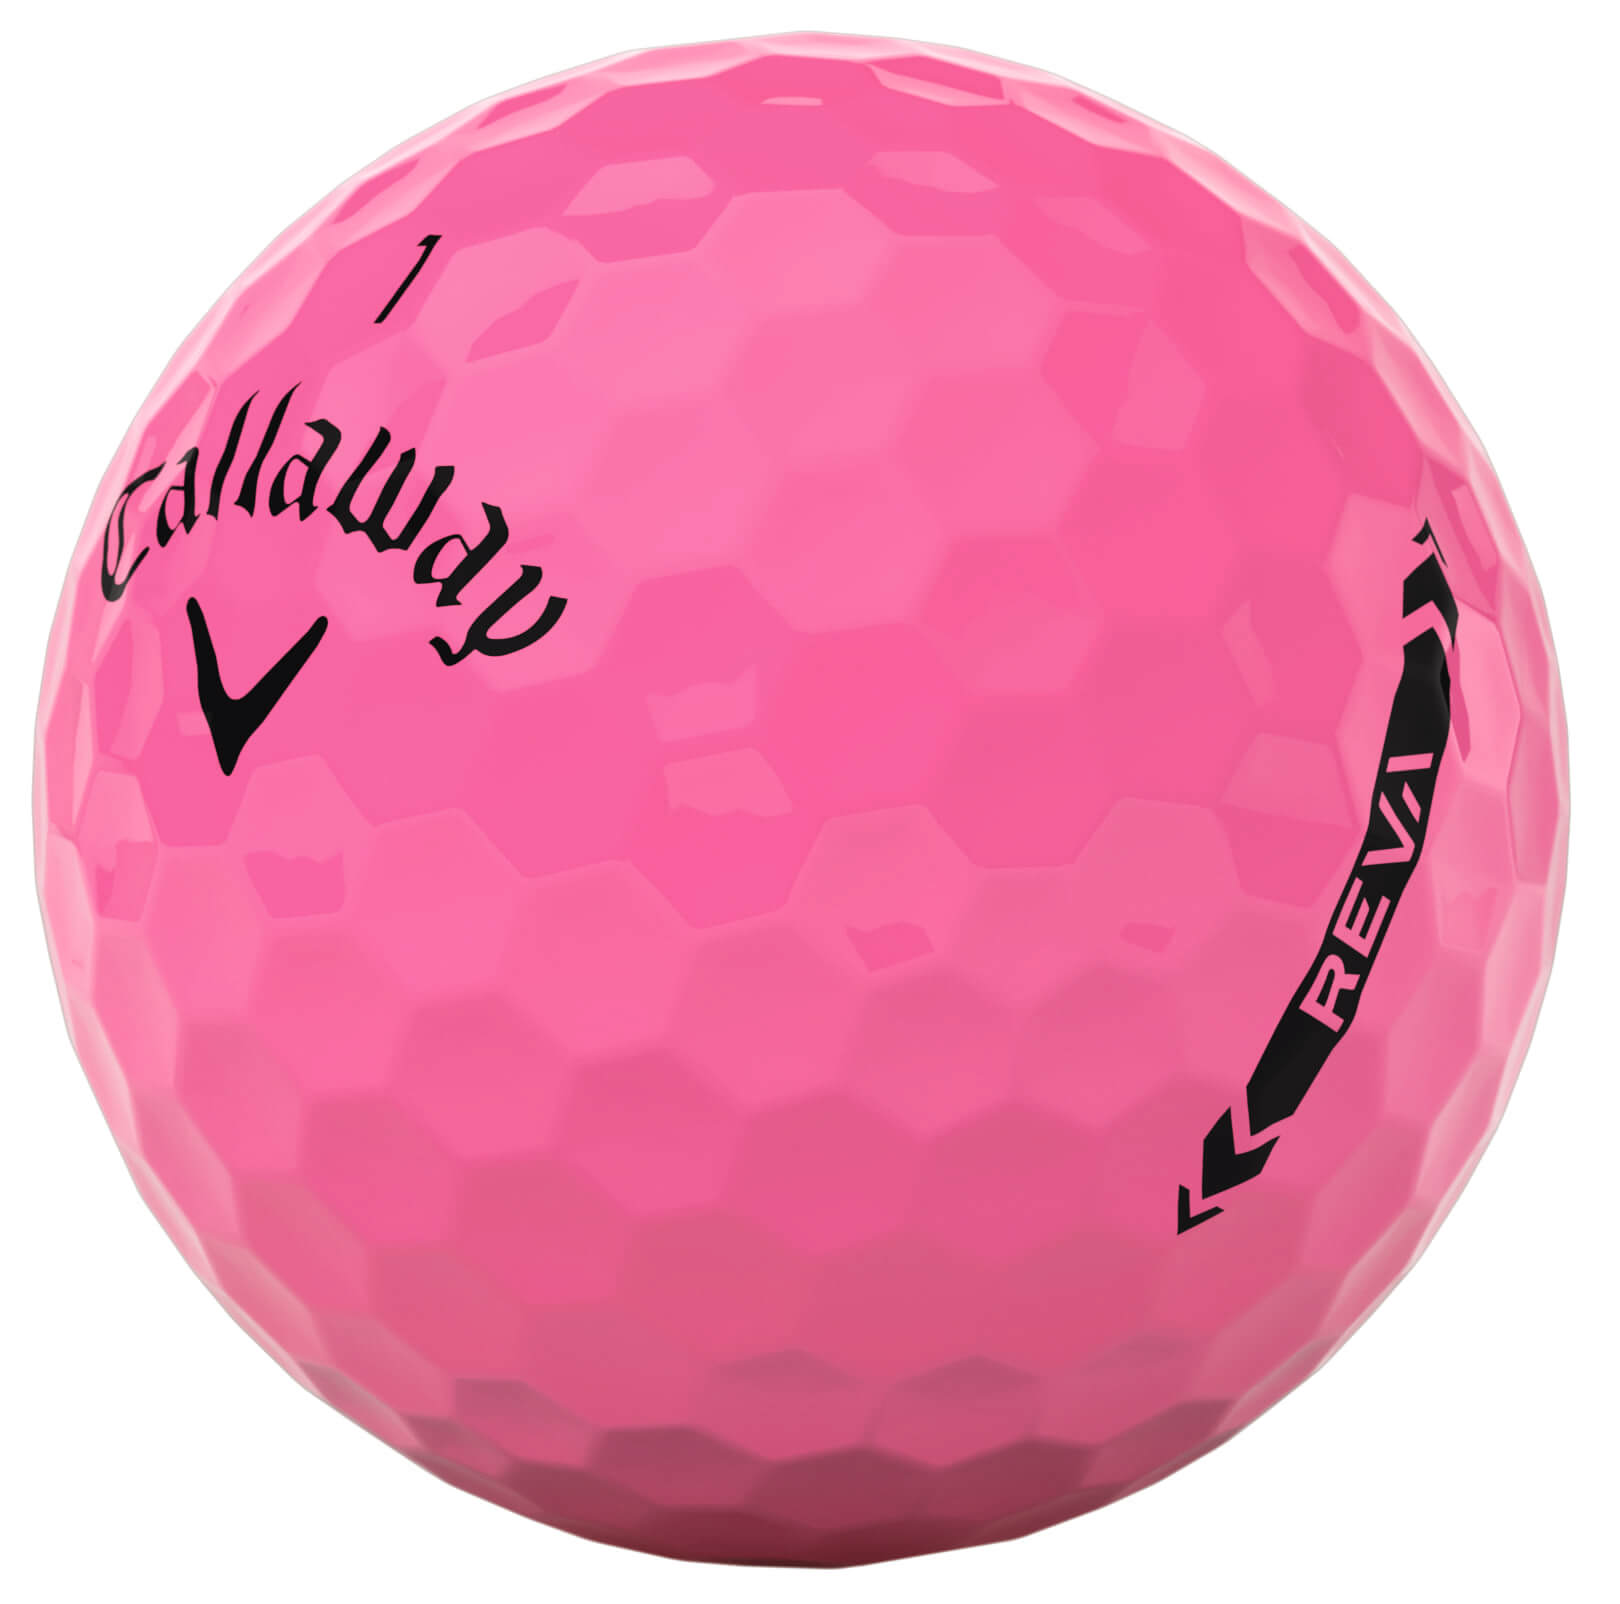 Callaway Reva Golfbälle, pink